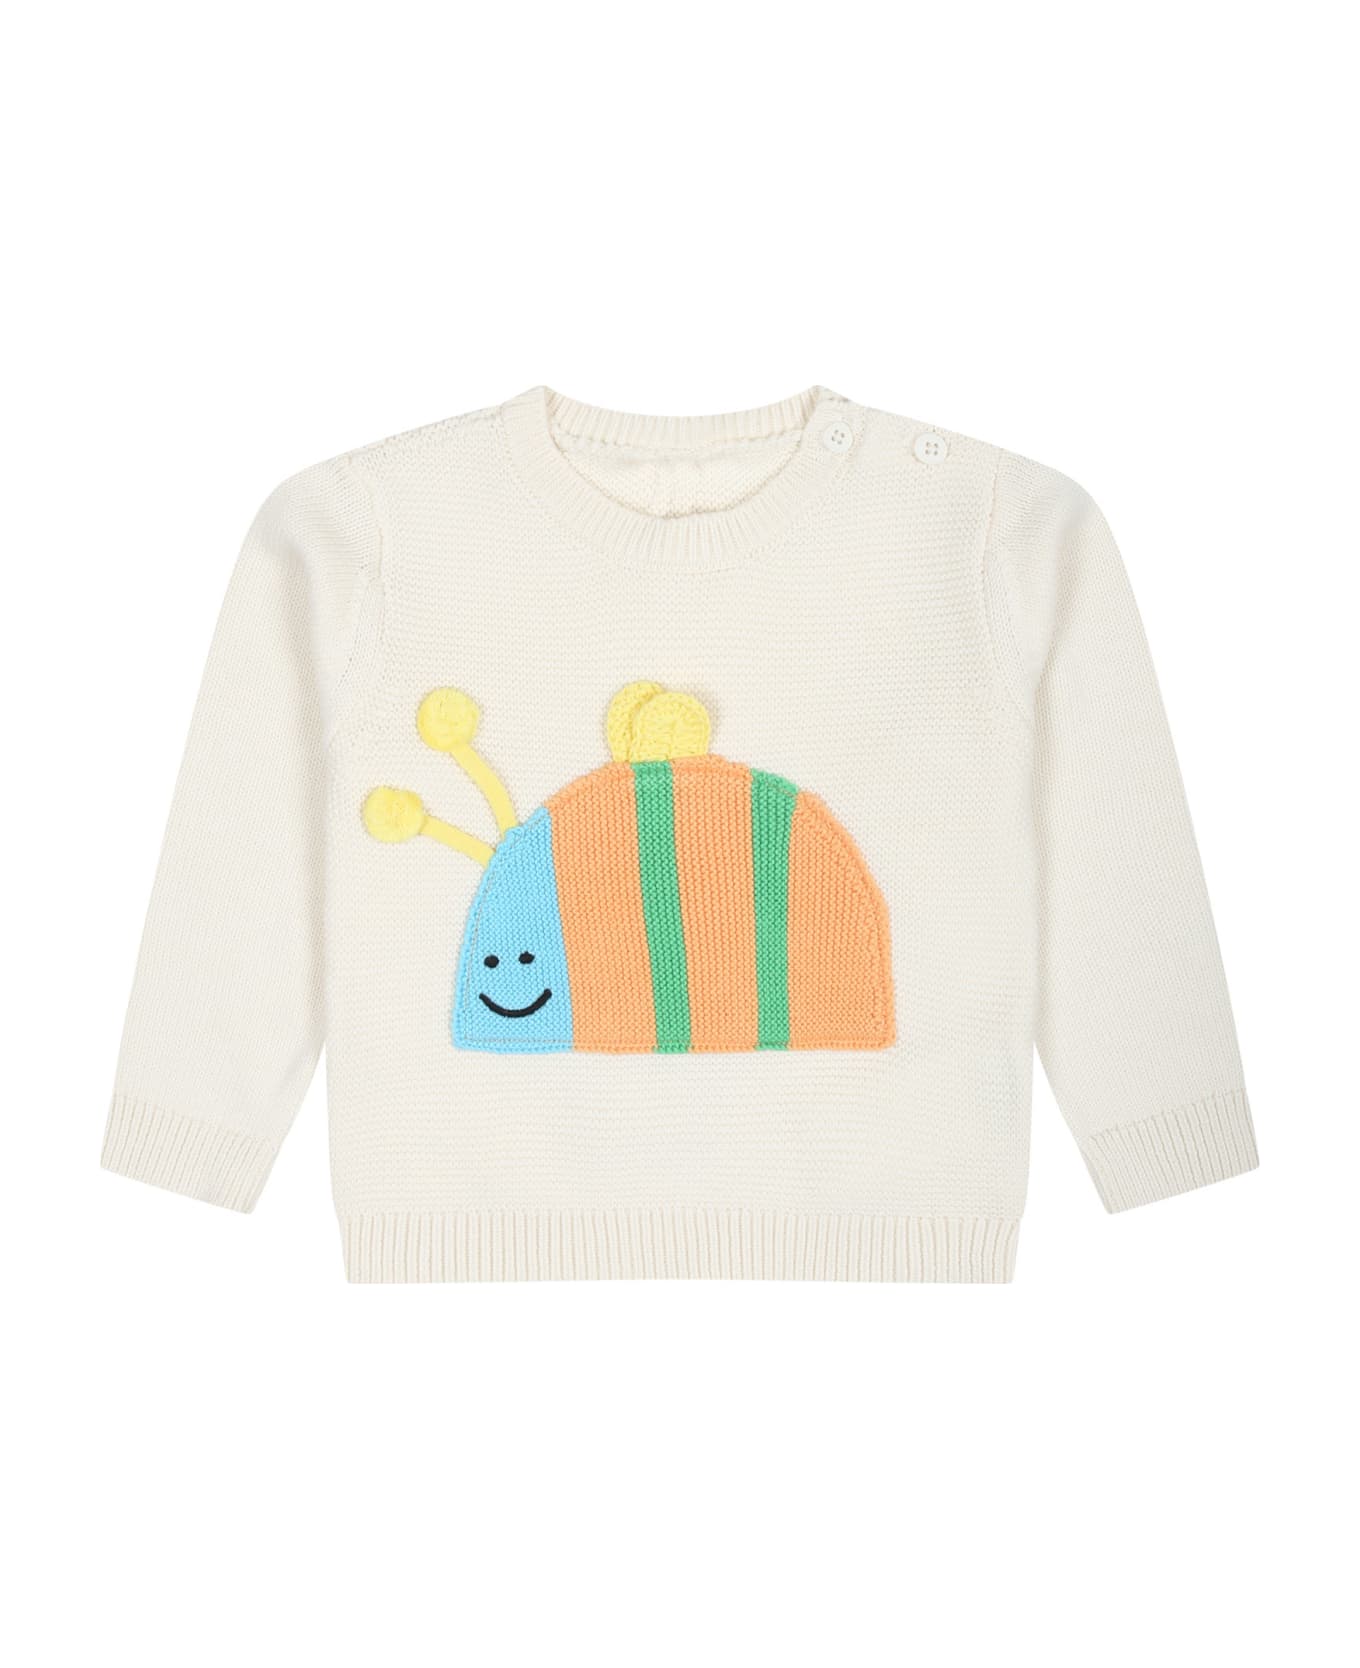 Stella McCartney Kids Ivory Sweater For Babies With Ladybug - Ivory ニットウェア＆スウェットシャツ